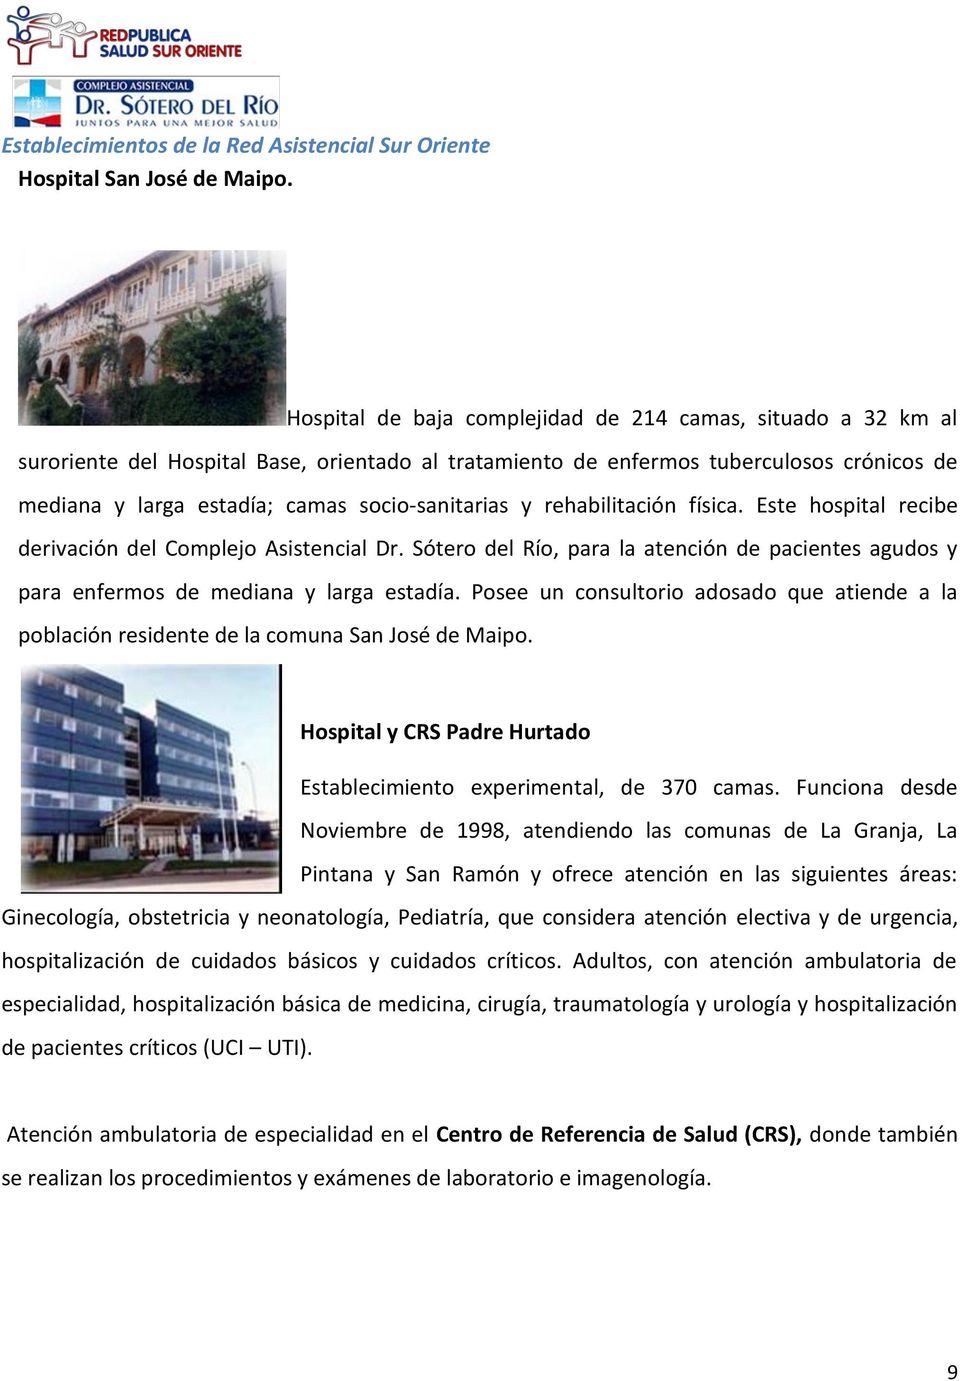 socio-sanitarias y rehabilitación física. Este hospital recibe derivación del Complejo Asistencial Dr. Sótero del Río, para la atención de pacientes agudos y para enfermos de mediana y larga estadía.